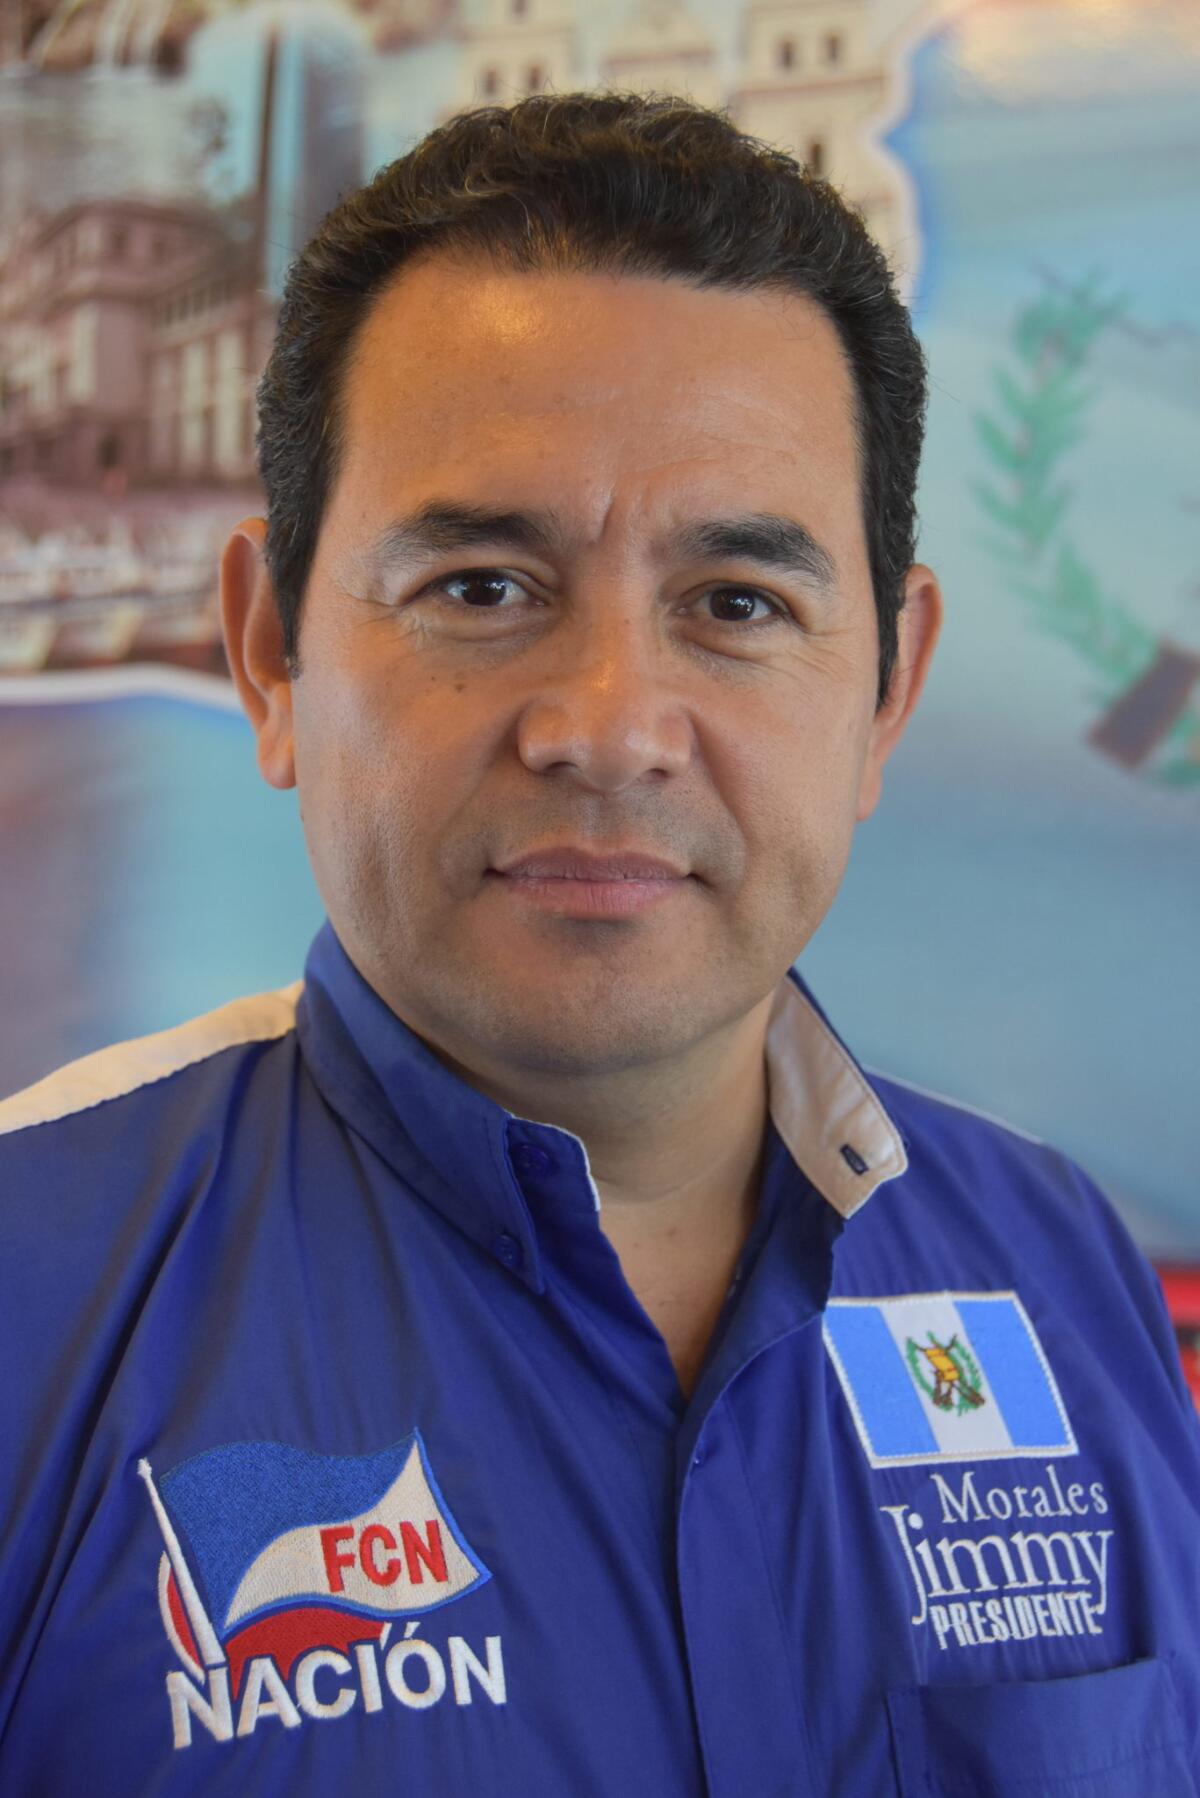 Fotografía del 11 de julio de 2015 en Hollywood, California (Estados Unidos), del candidato a la presidencia de Guatemala Jimmy Morales por el Partido Político Frente de Convergencia Nacional (FCN).